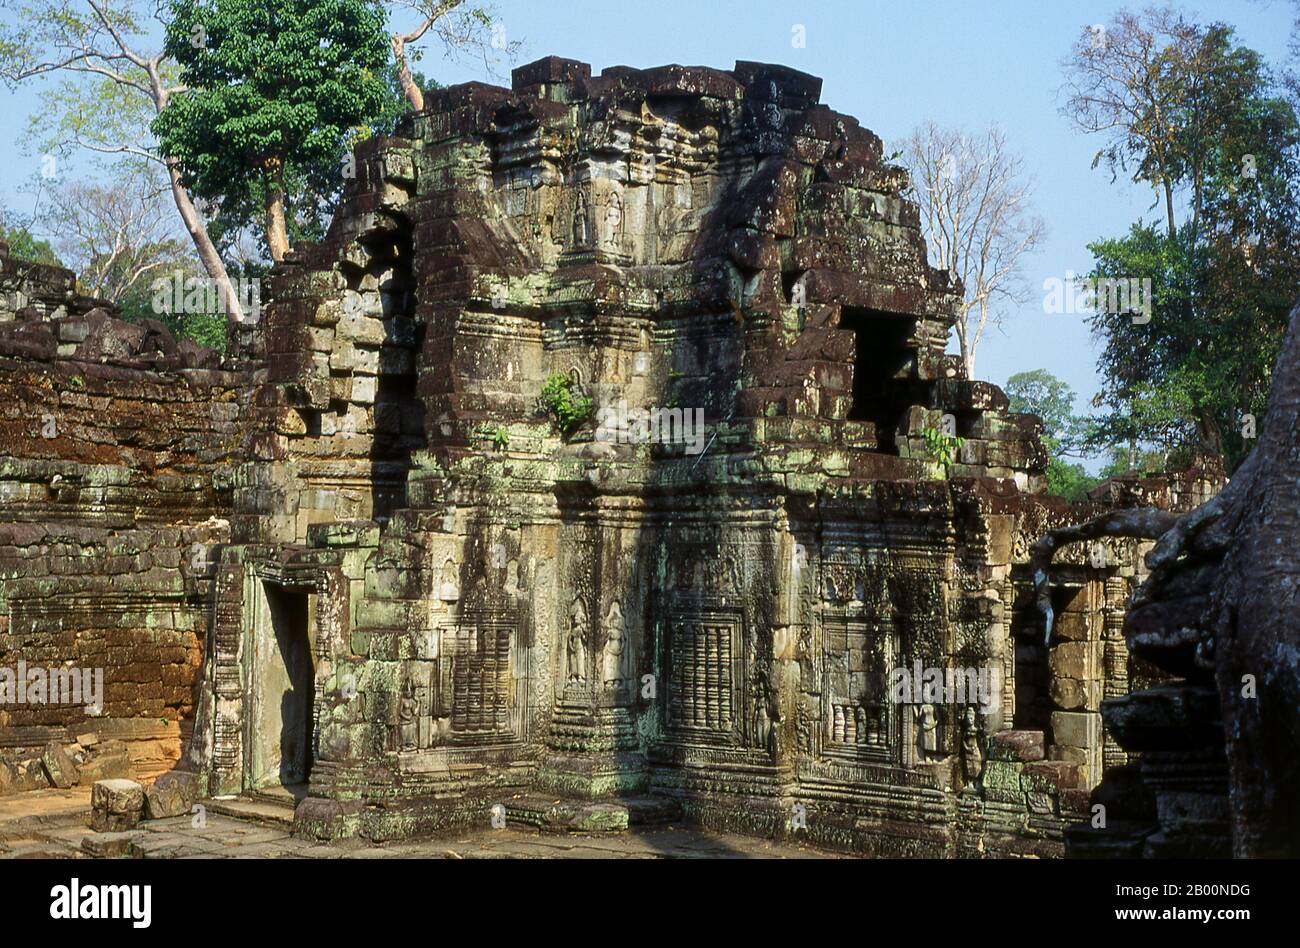 Cambogia: Preah Khan, Angkor. Preah Khan (Tempio della Spada Sacra) è stato costruito nel tardo 12 ° secolo (1191) da Jayavarman VII e si trova appena a nord di Angkor Thom. Il tempio fu costruito sul luogo della vittoria di Jayavarman VII sui Cham invasori nel 1191. Era il centro di un'organizzazione consistente, con quasi 100,000 funzionari e funzionari. Fu un'università buddista alla volta. La divinità primaria del tempio è il boddhisatva Avalokiteshvara sotto forma di padre di Jayavarman. Foto Stock